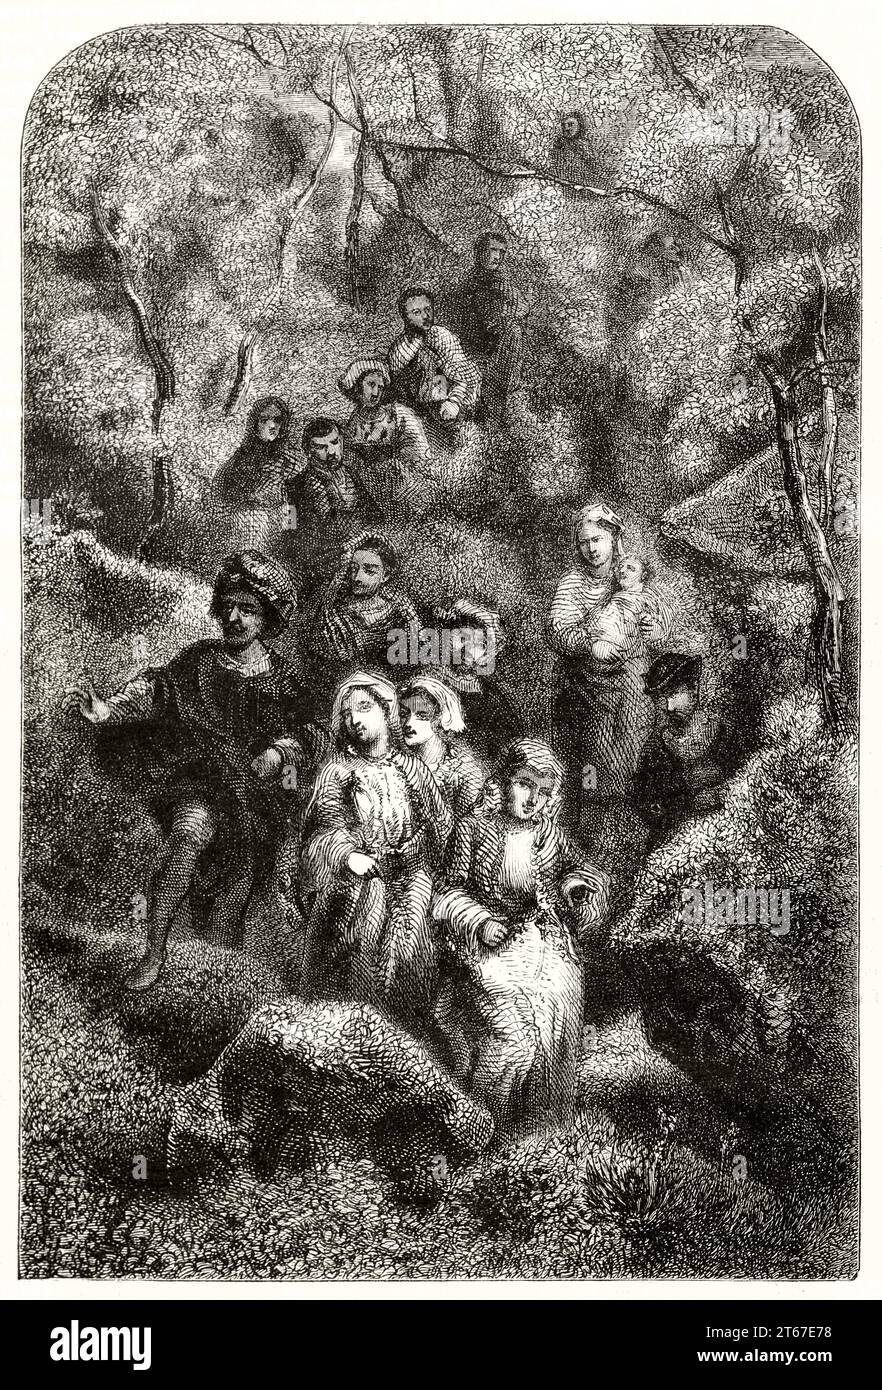 Reproduction d'un tableau de Narcisse Diaz représentant des Bohémiens dans la forêt. Par Geoffroy d'après Diaz, publ. Sur magasin pittoresque, Paris, 1851 Banque D'Images